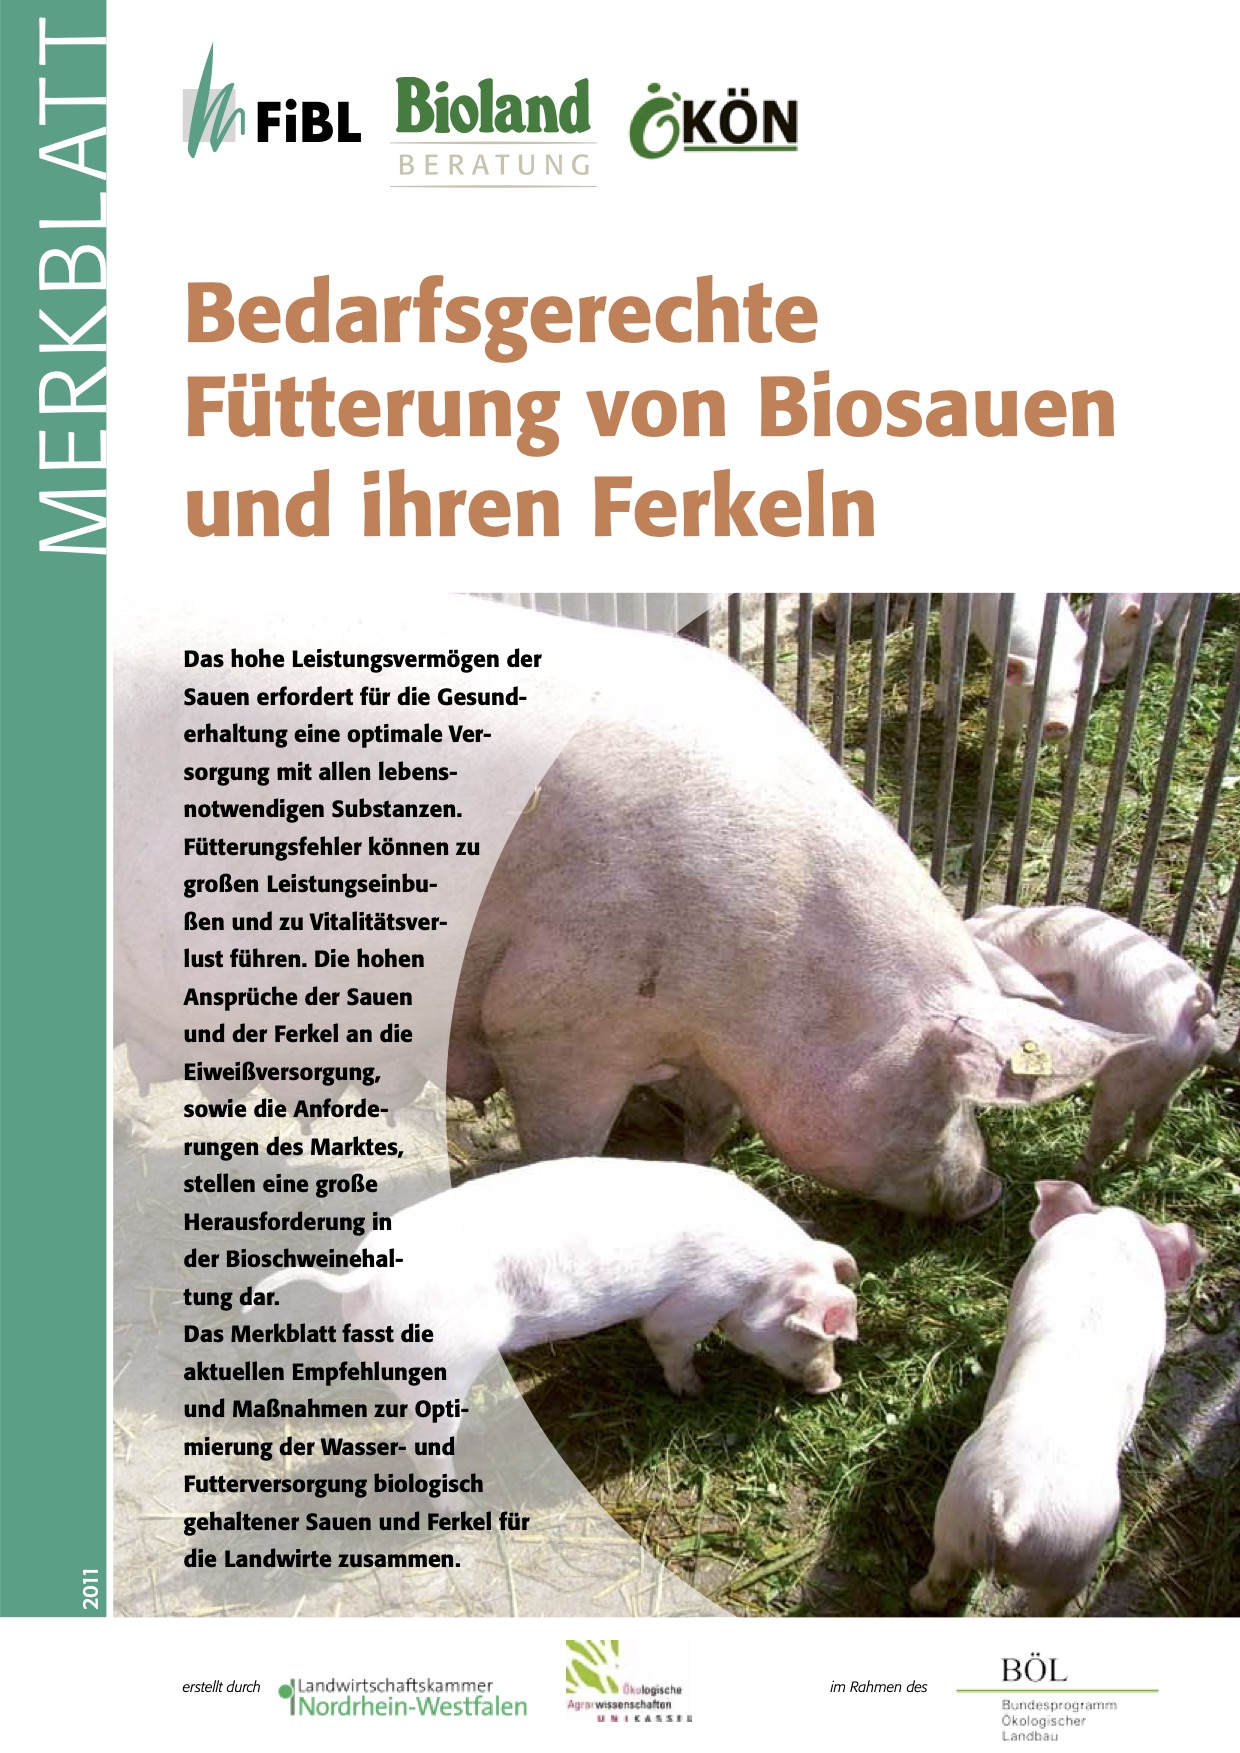 Подходящи стратегии за хранене на органични свине майки и техните прасенца